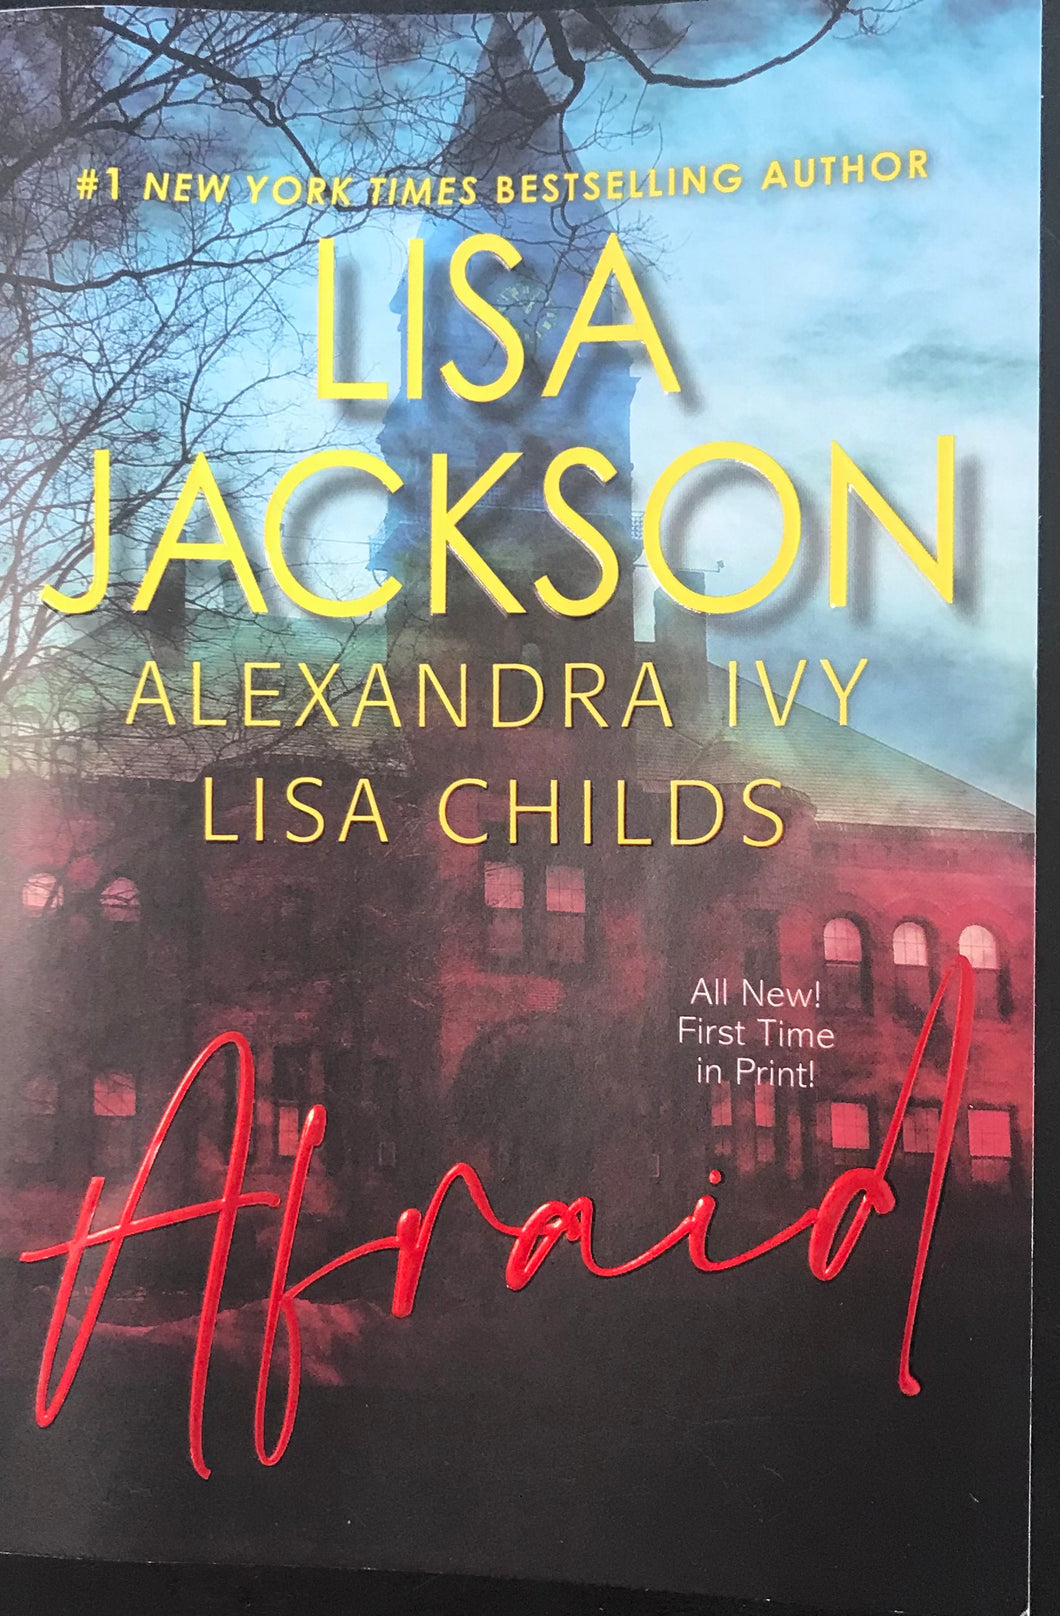 Afraid, Lisa Jackson, Alexandra Ivy, Lisa Childs